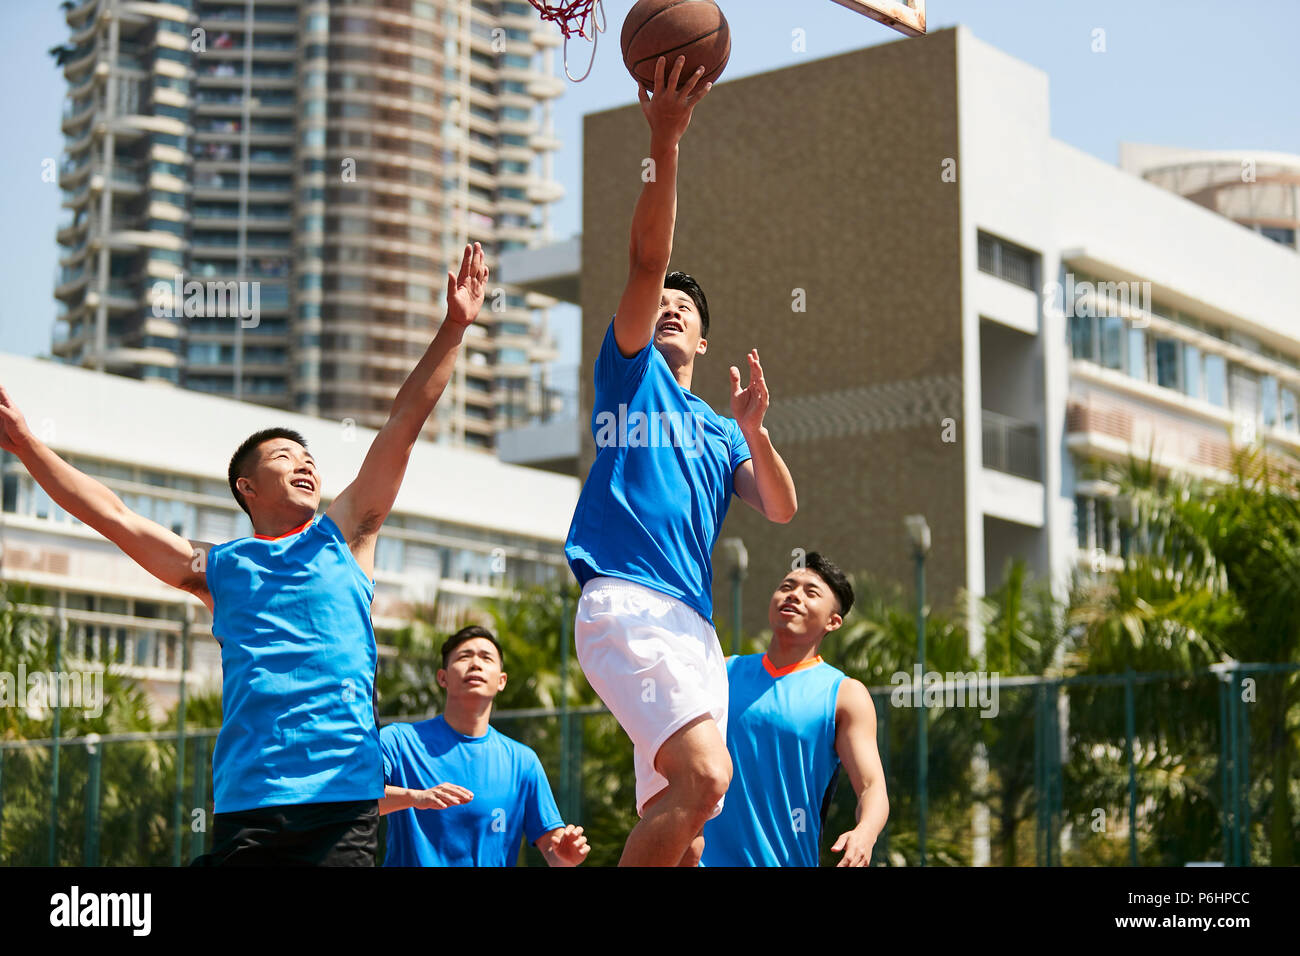 Les jeunes mâles adultes asiatiques player jouer au basket-ball sur une cour en plein air en milieu urbain. Banque D'Images